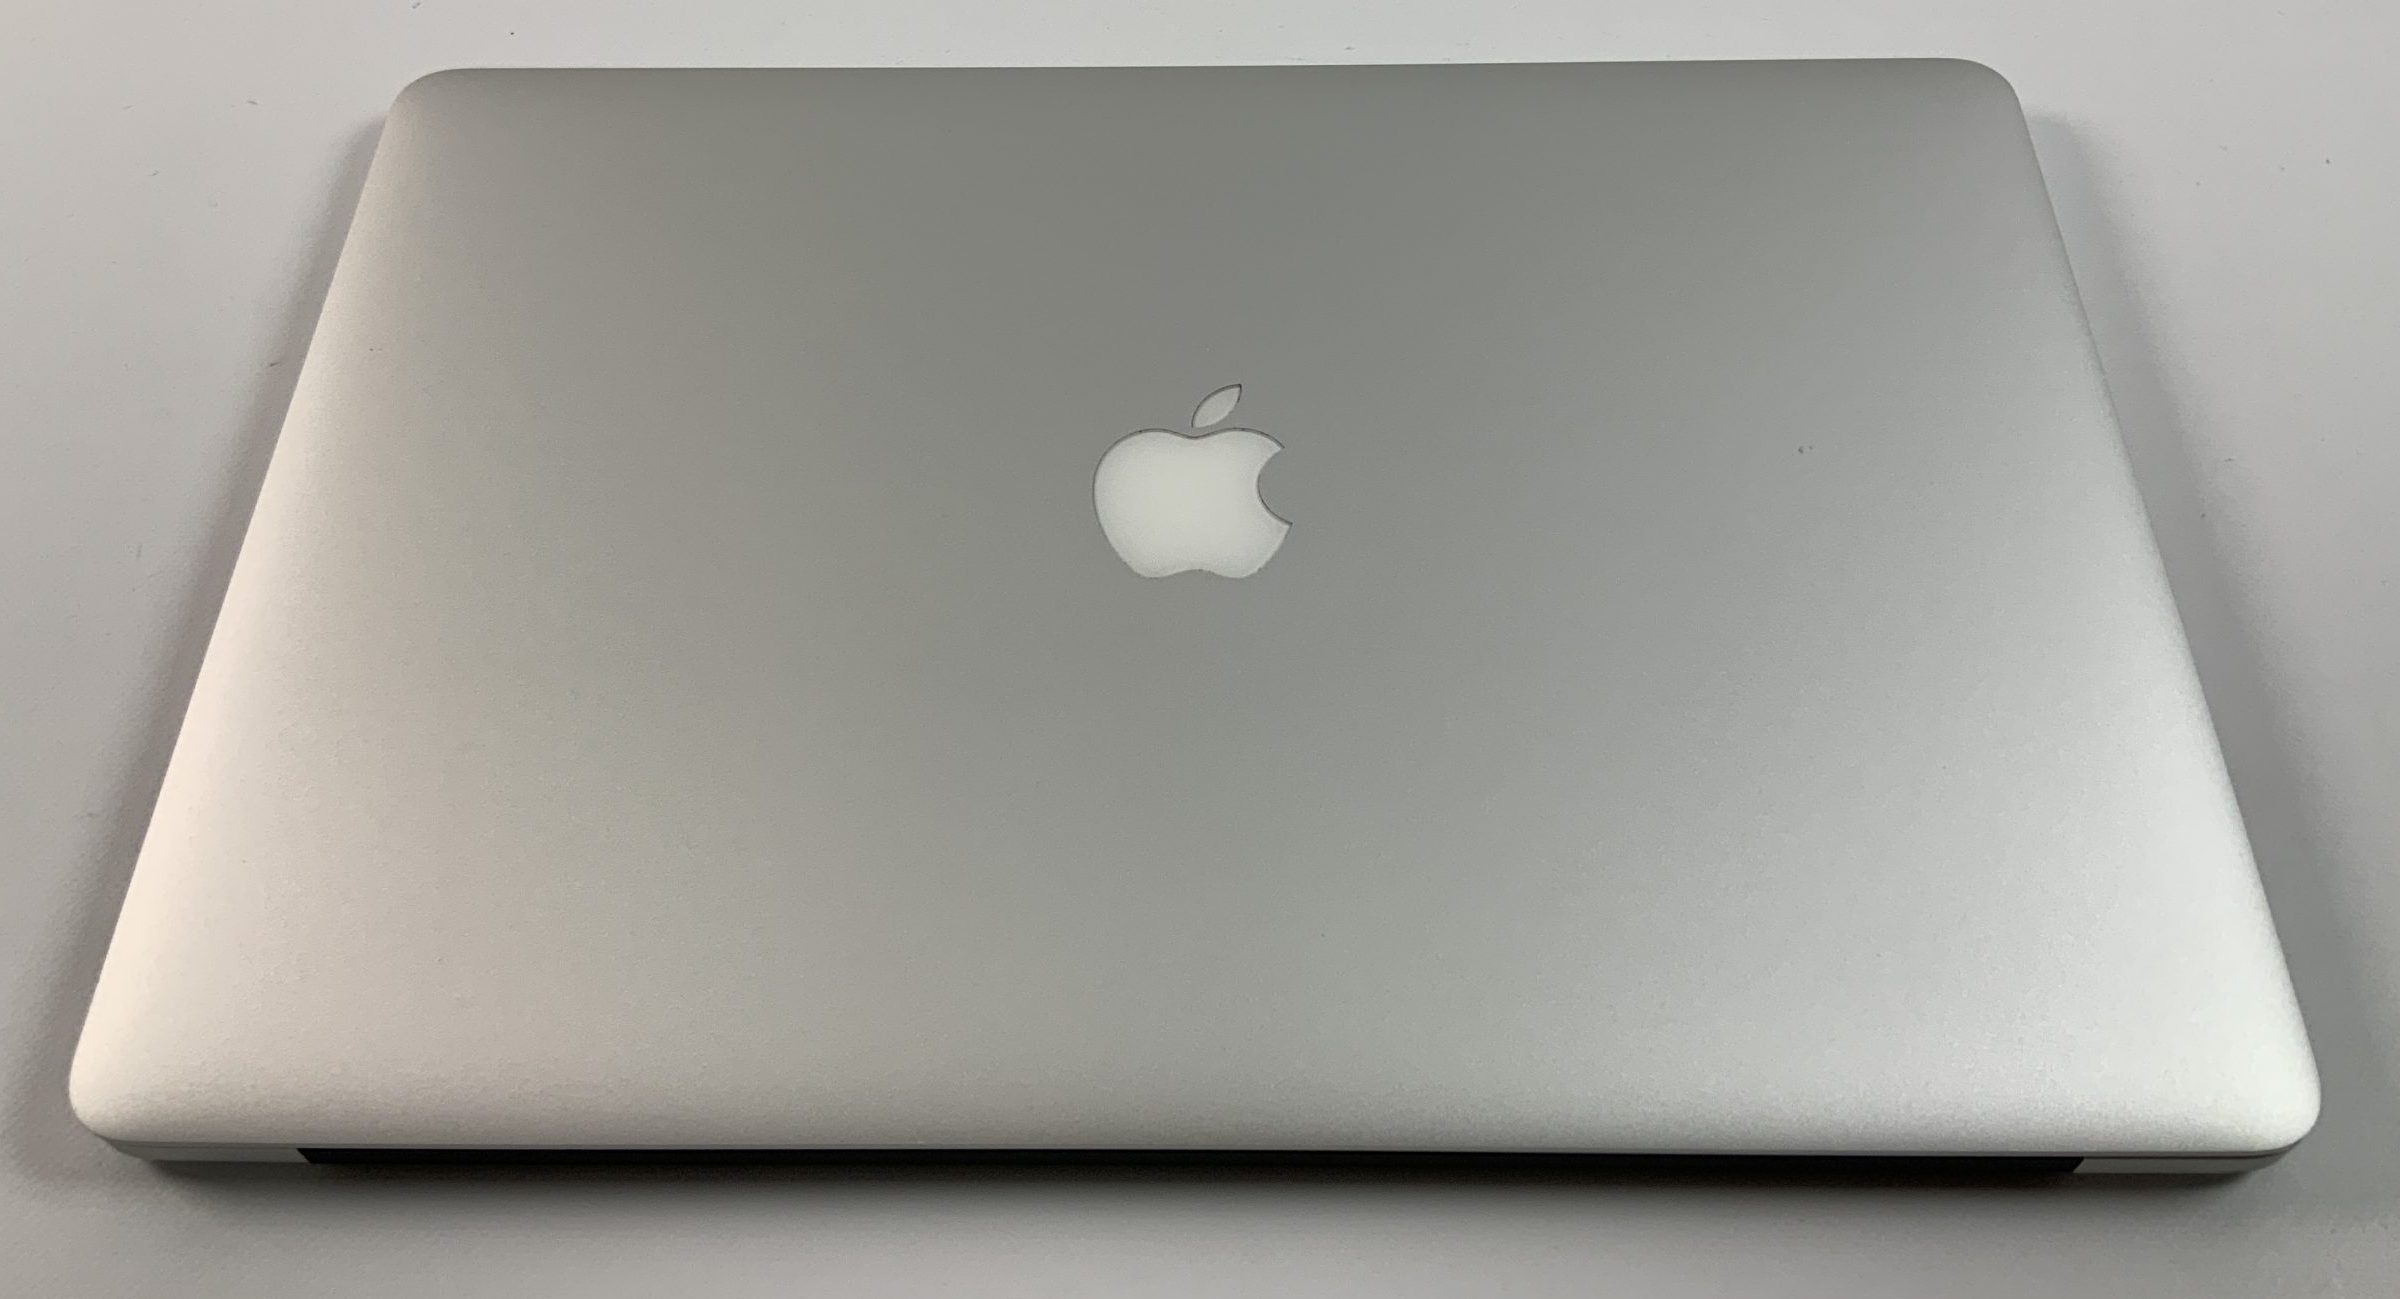 MacBook Pro Retina 15" Mid 2015 (Intel Quad-Core i7 2.2 GHz 16 GB RAM 256 GB SSD), Intel Quad-Core i7 2.2 GHz, 16 GB RAM, 256 GB SSD, immagine 2